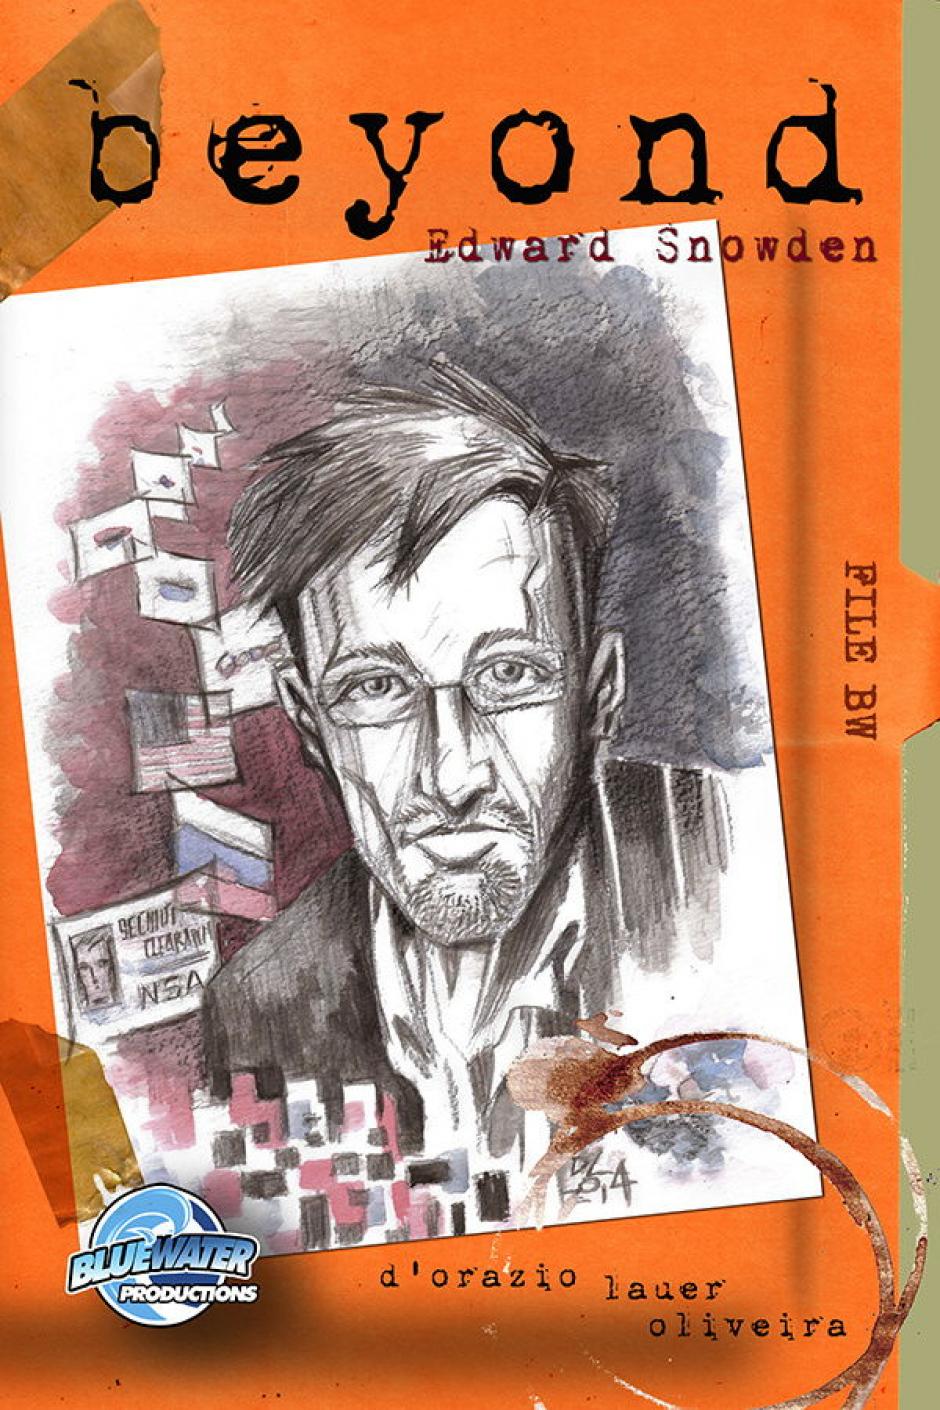 Imagen cedida por la editorial Bluewater Productions de la portada de un cómic en el que Edward Snowden, el exanalista externo de la Agencia de la Seguridad Nacional de Estados Unidos (NSA, por su sigla en inglés) que filtró la información sobre el espionaje masivo de esa agencia, es protagonista. (Foto: EFE)